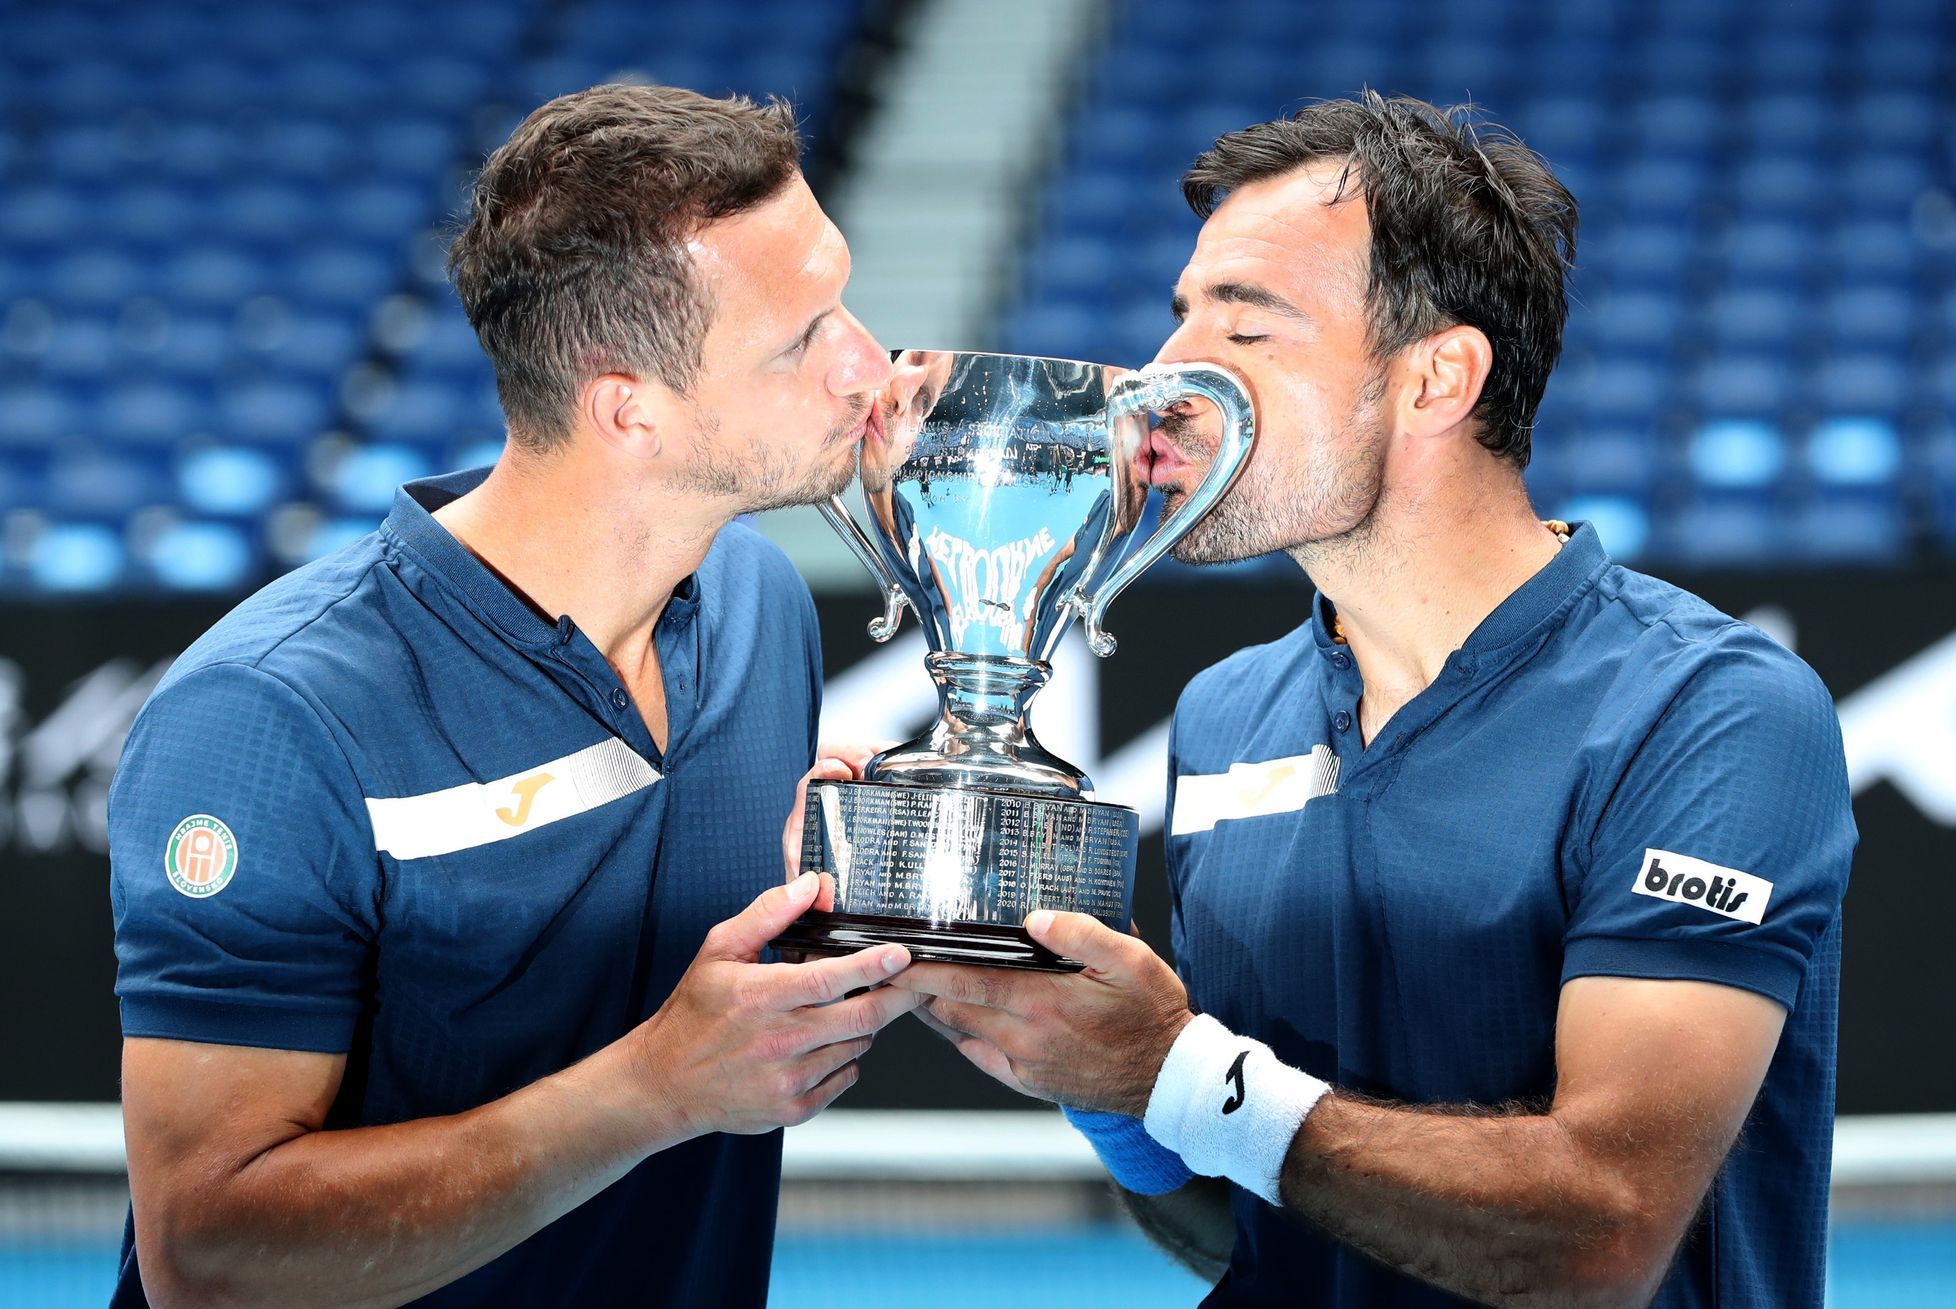 Filip Polášek a Ivan Dodig s trofejí pro vítěze čtyřhry na Australian Open 2021